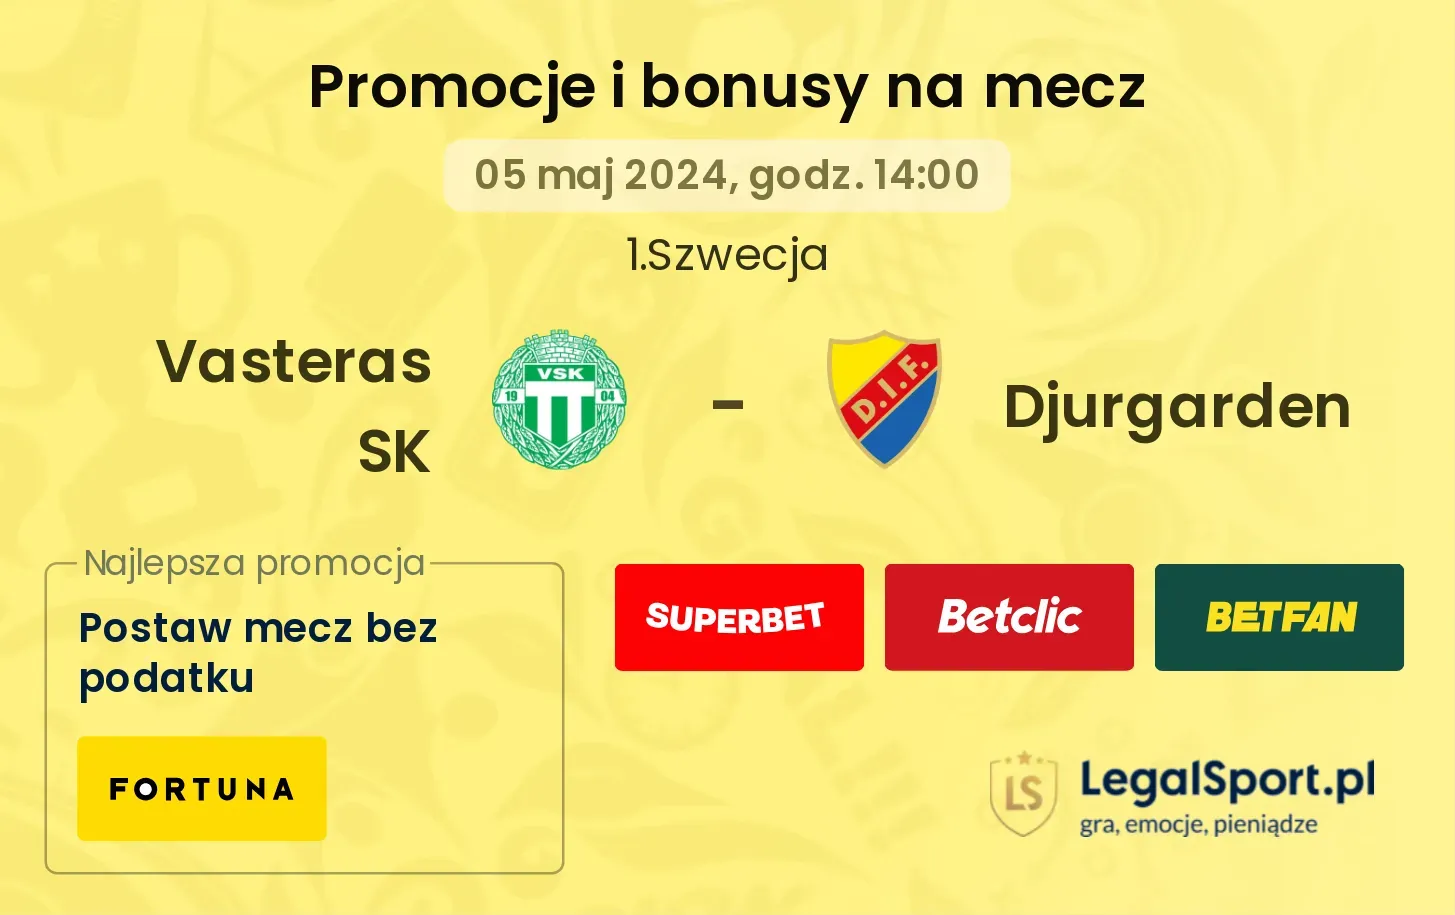 Vasteras SK - Djurgarden promocje bonusy na mecz